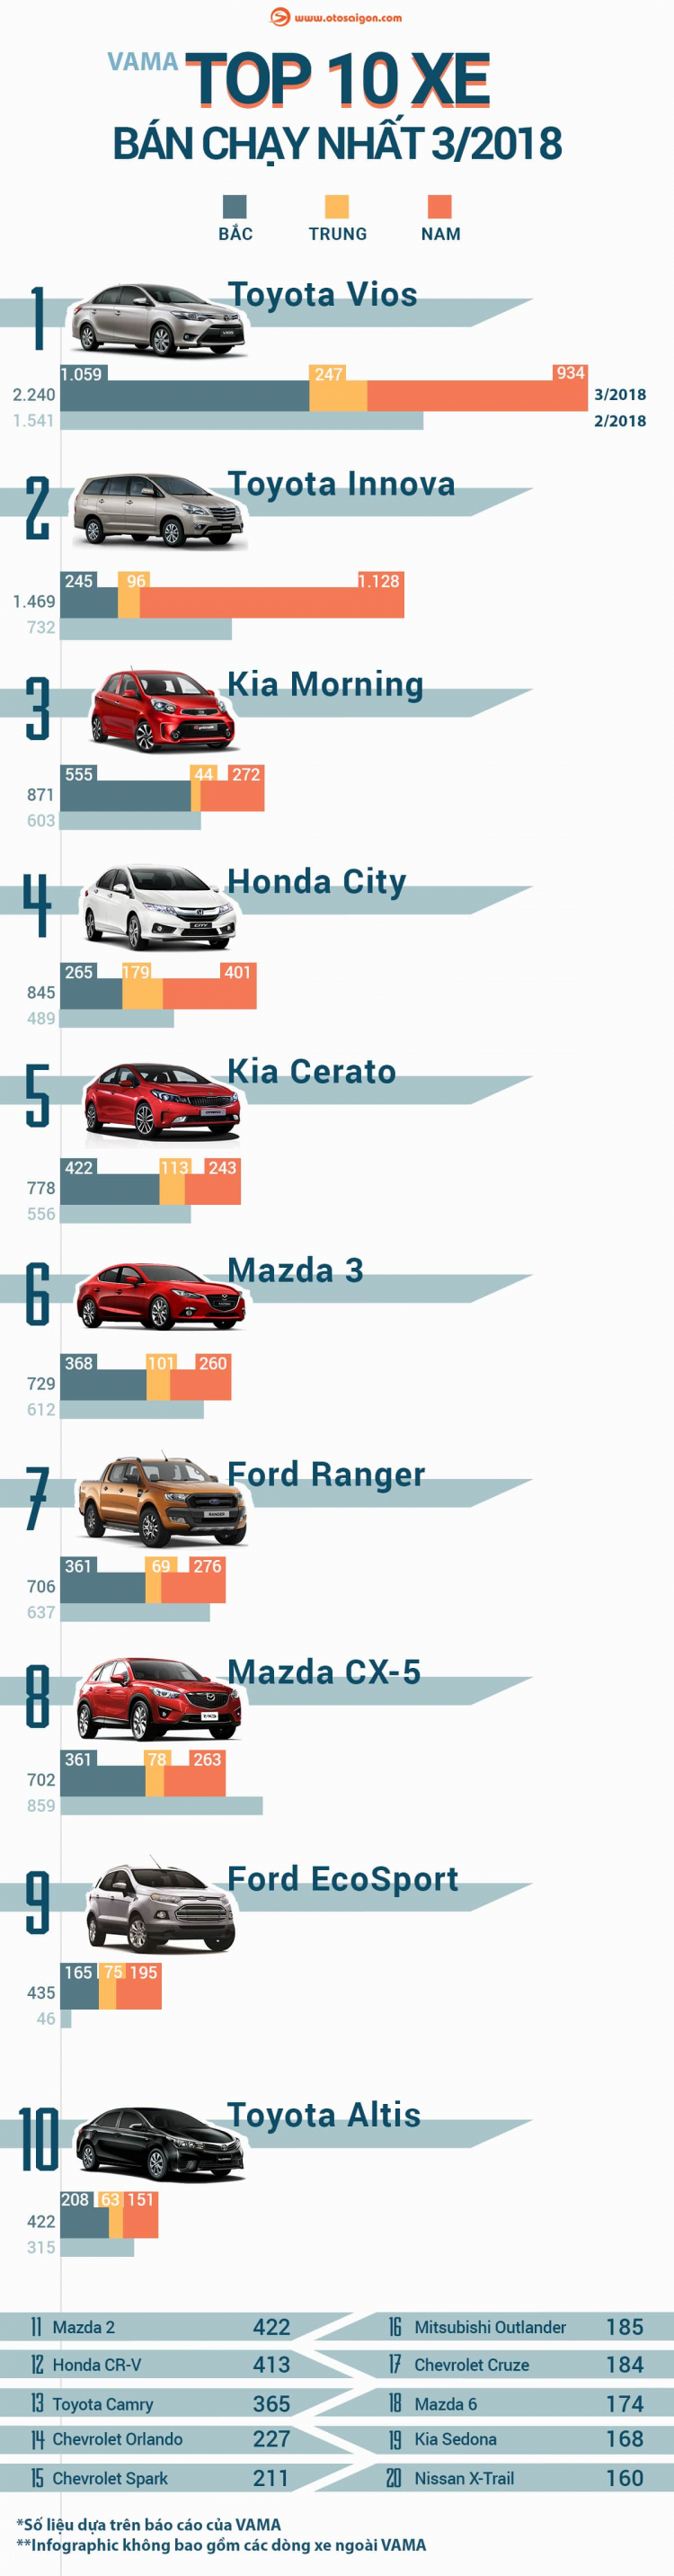 [Infographic] Top 10 mẫu xe bán chạy nhất tháng 3/2018